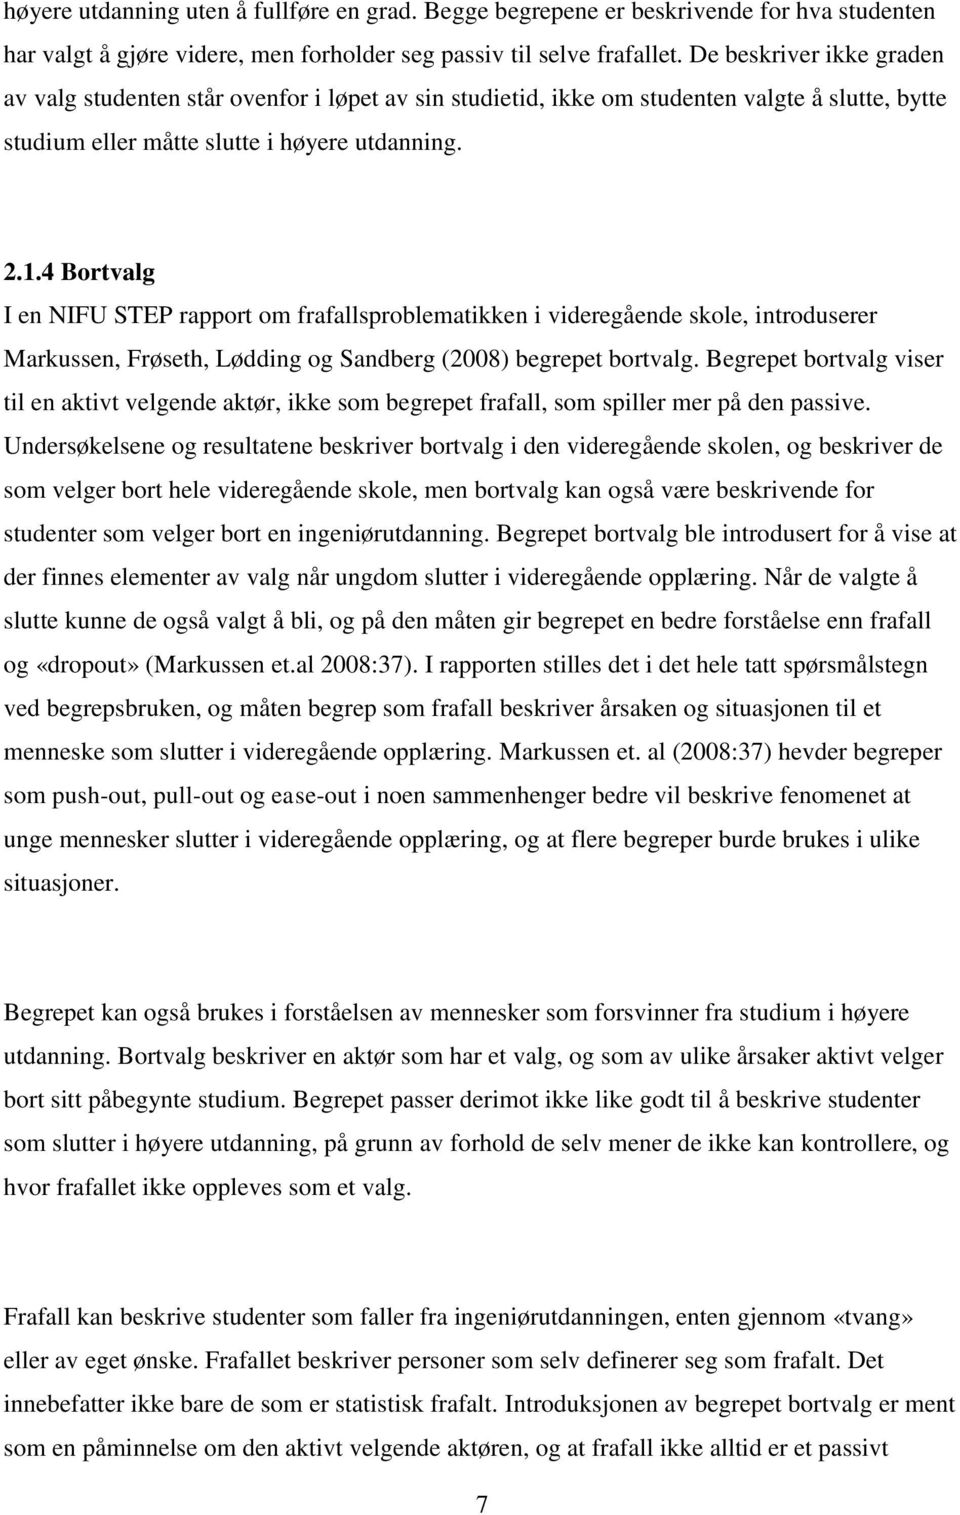 4 Bortvalg I en NIFU STEP rapport om frafallsproblematikken i videregående skole, introduserer Markussen, Frøseth, Lødding og Sandberg (2008) begrepet bortvalg.